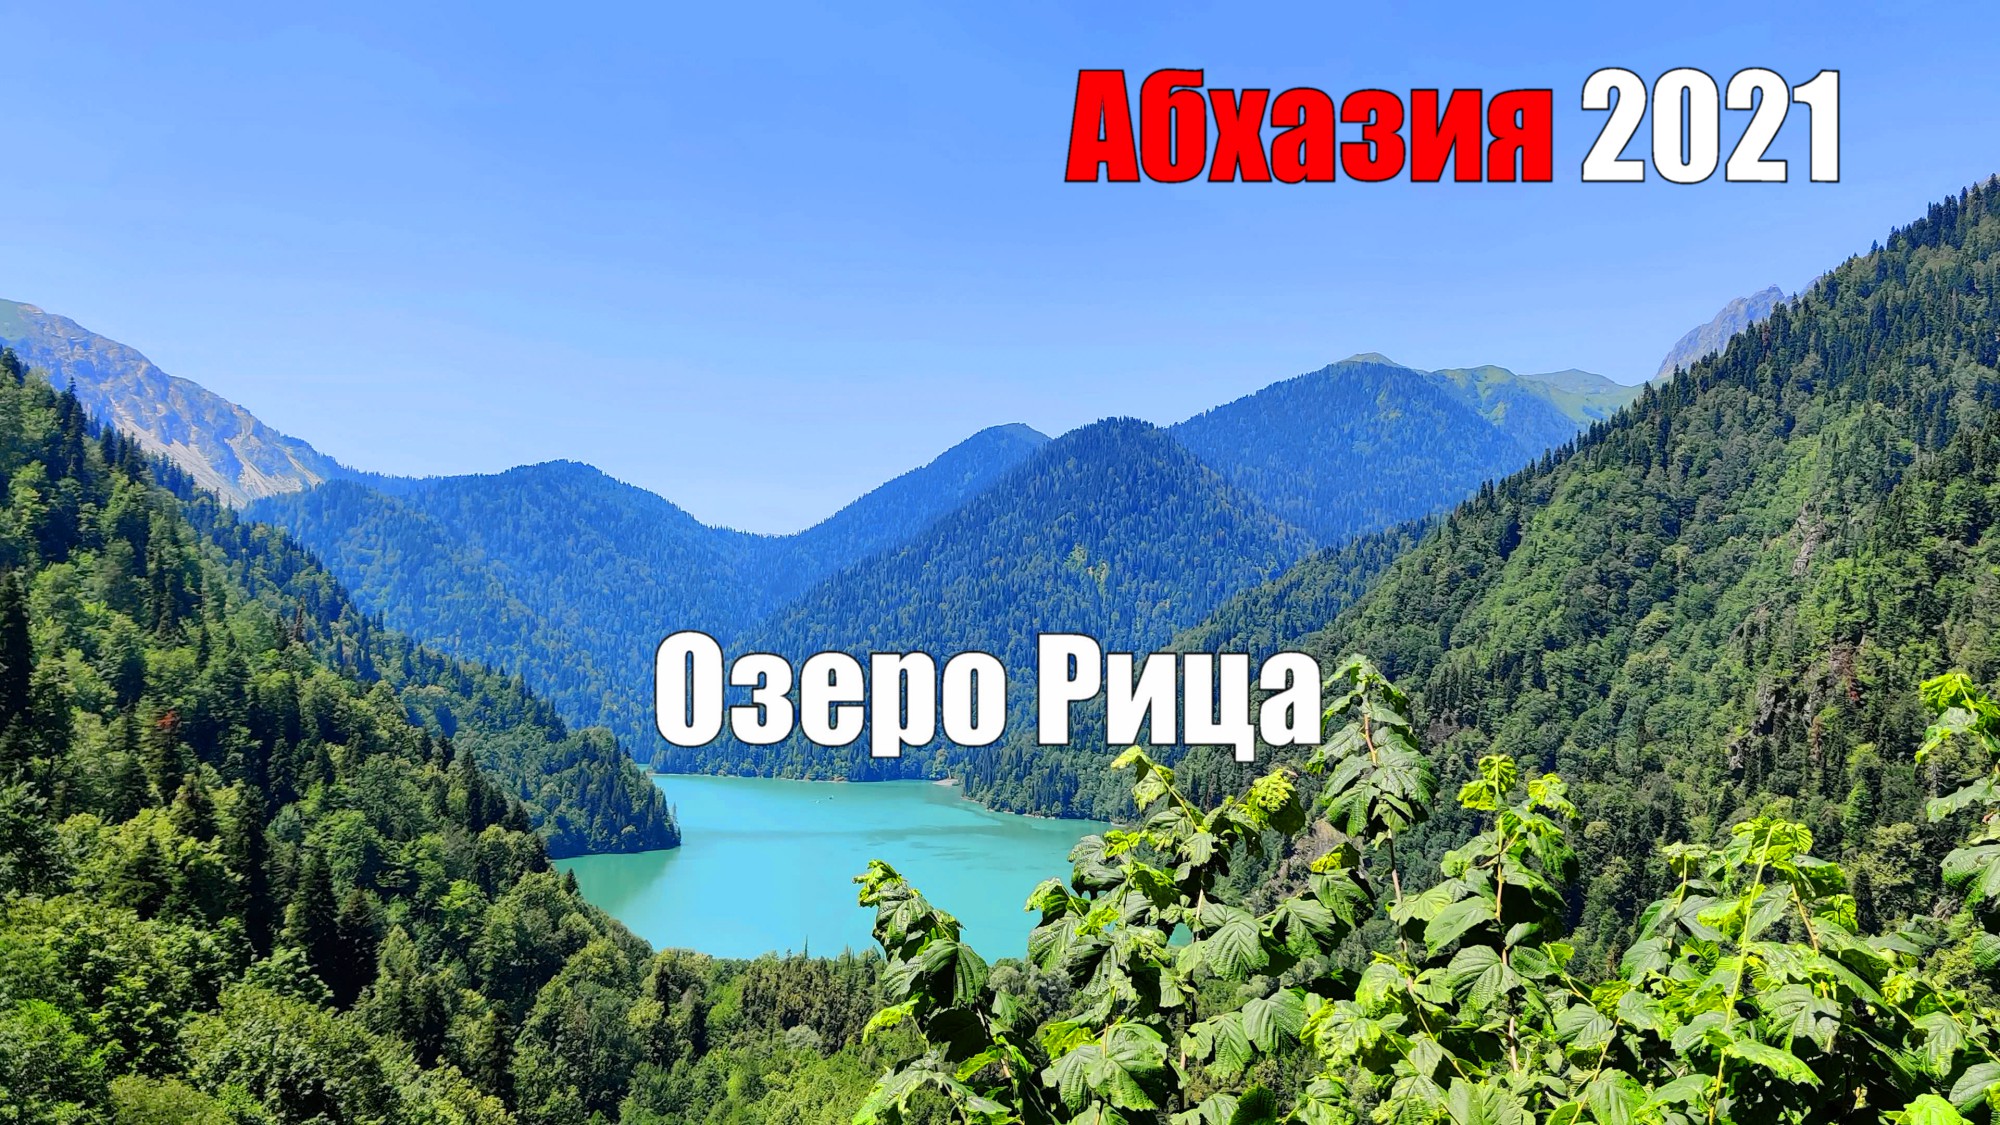 Озеро Рица. Абхазия 2021